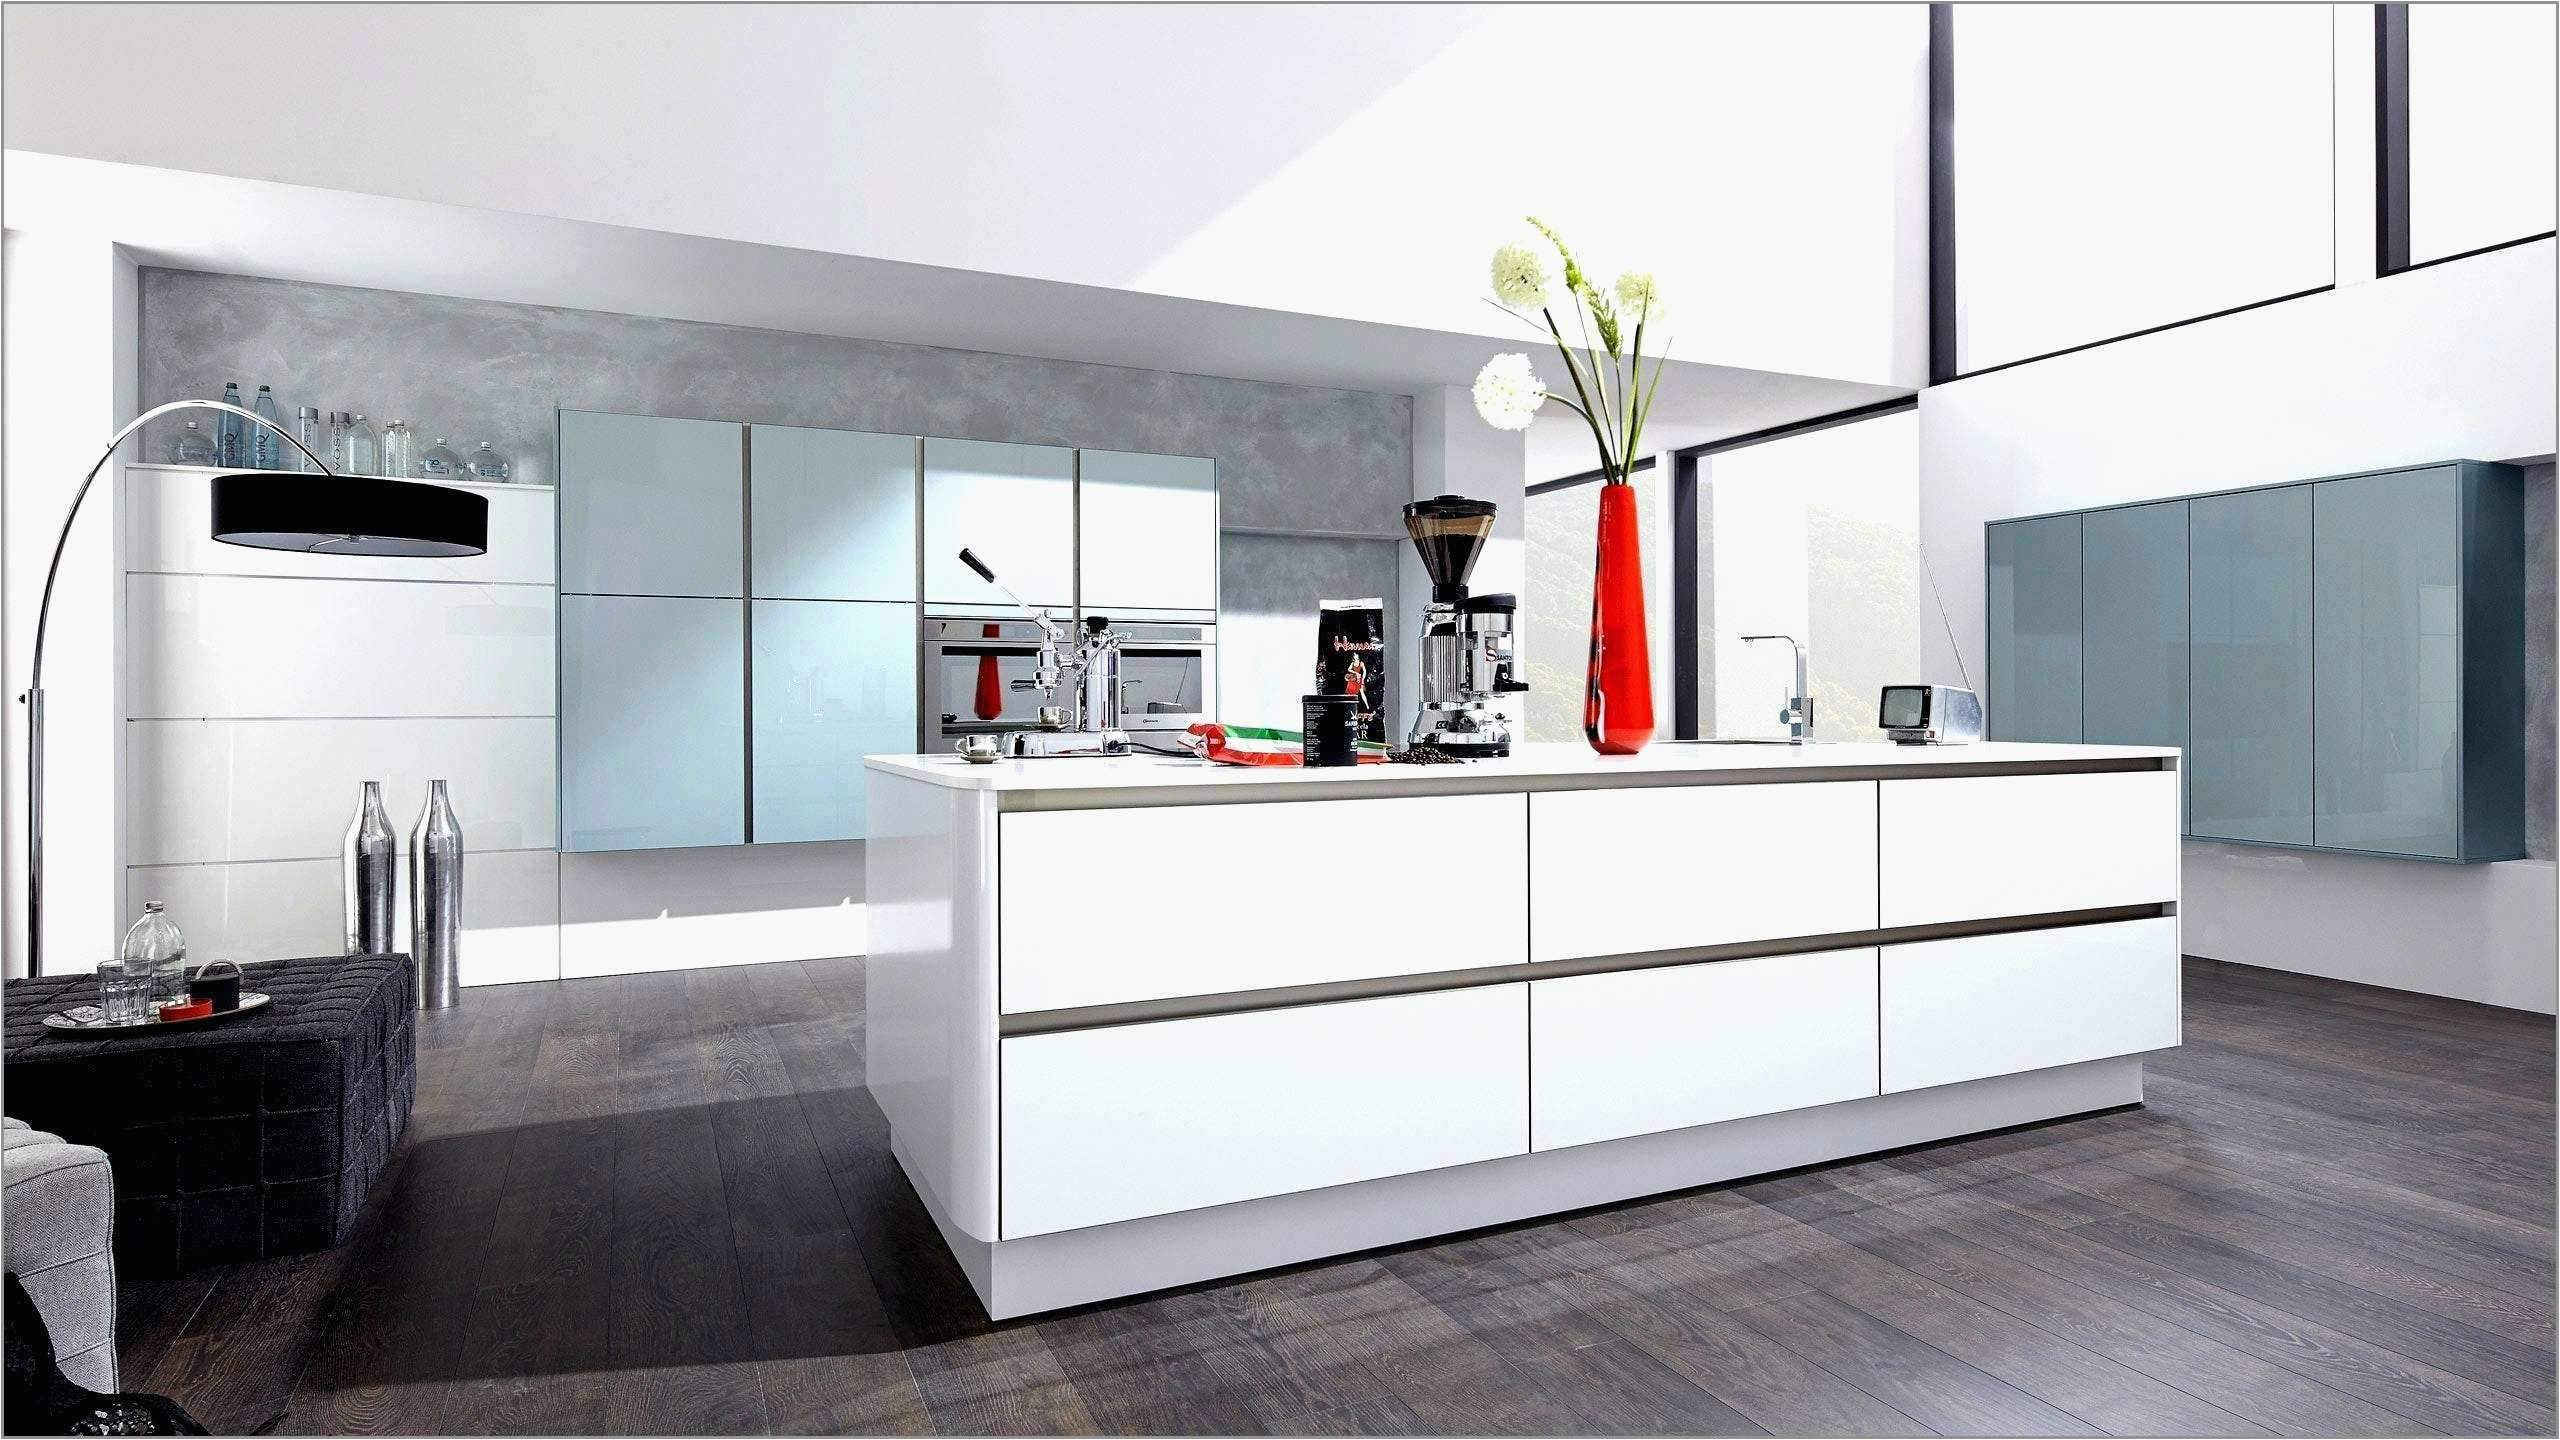 Moderne Küche Für Kleine Räume 26 Neu Wohnzimmer Ideen Für Kleine Räume Frisch